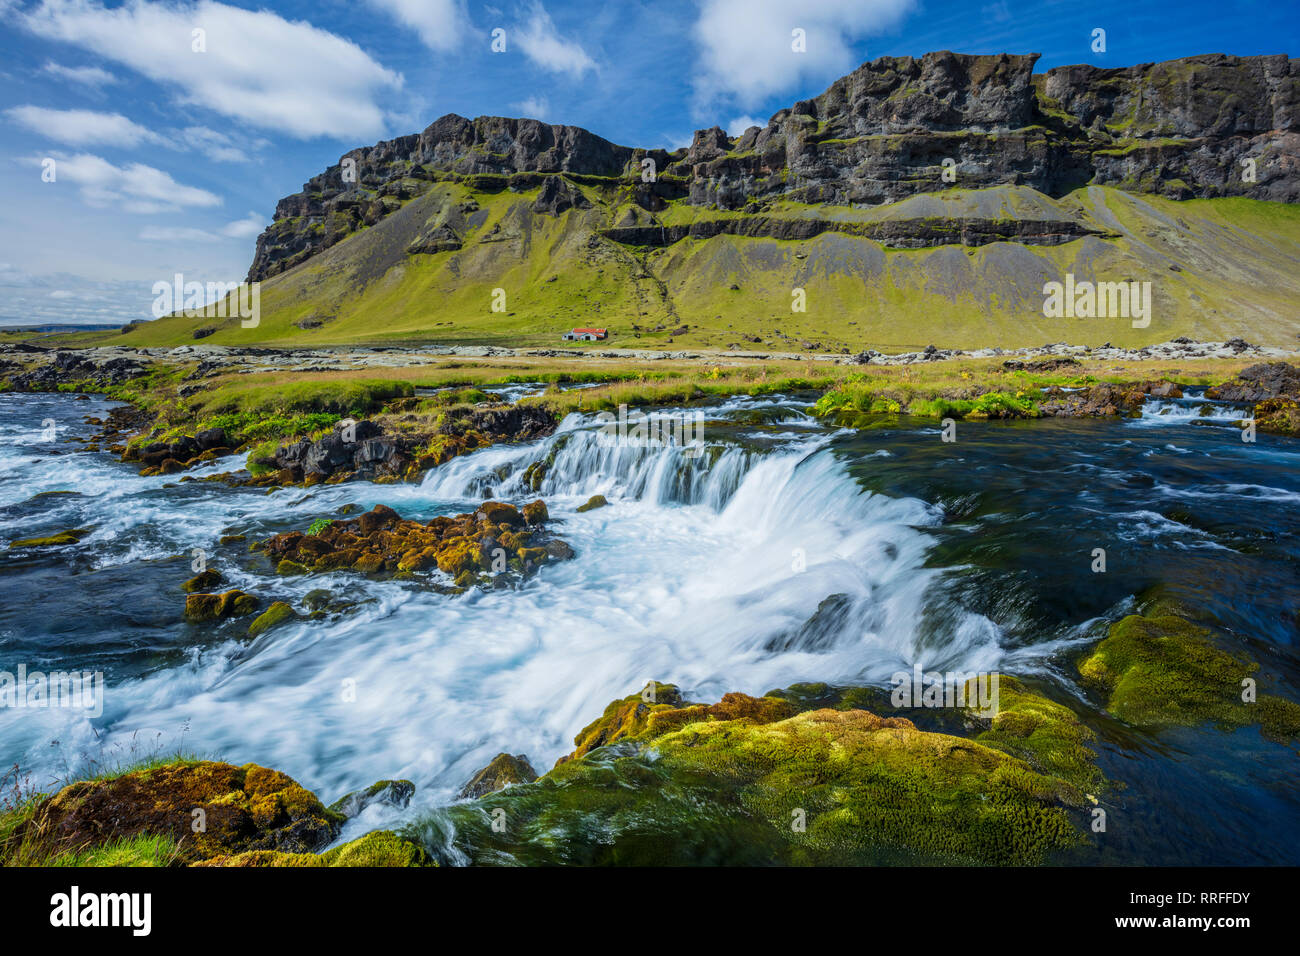 Caserío remoto junto al río Odulbruara Brunasandur. Sudhurland, al sur de Islandia. Foto de stock